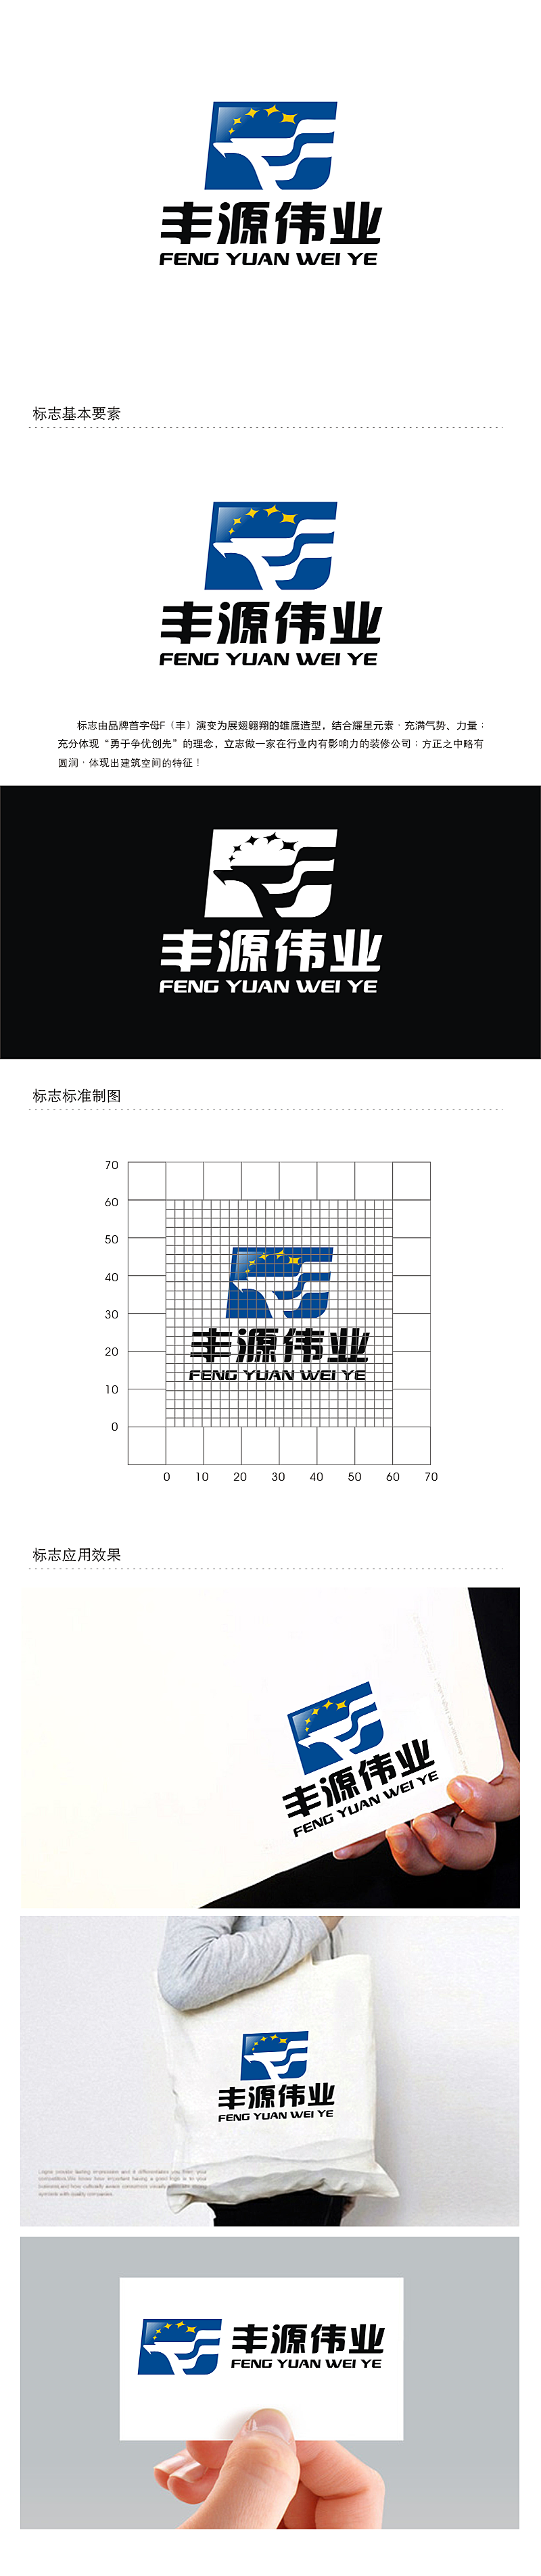 劳志飞的北京丰源伟业建筑装饰工程有限公司logo设计